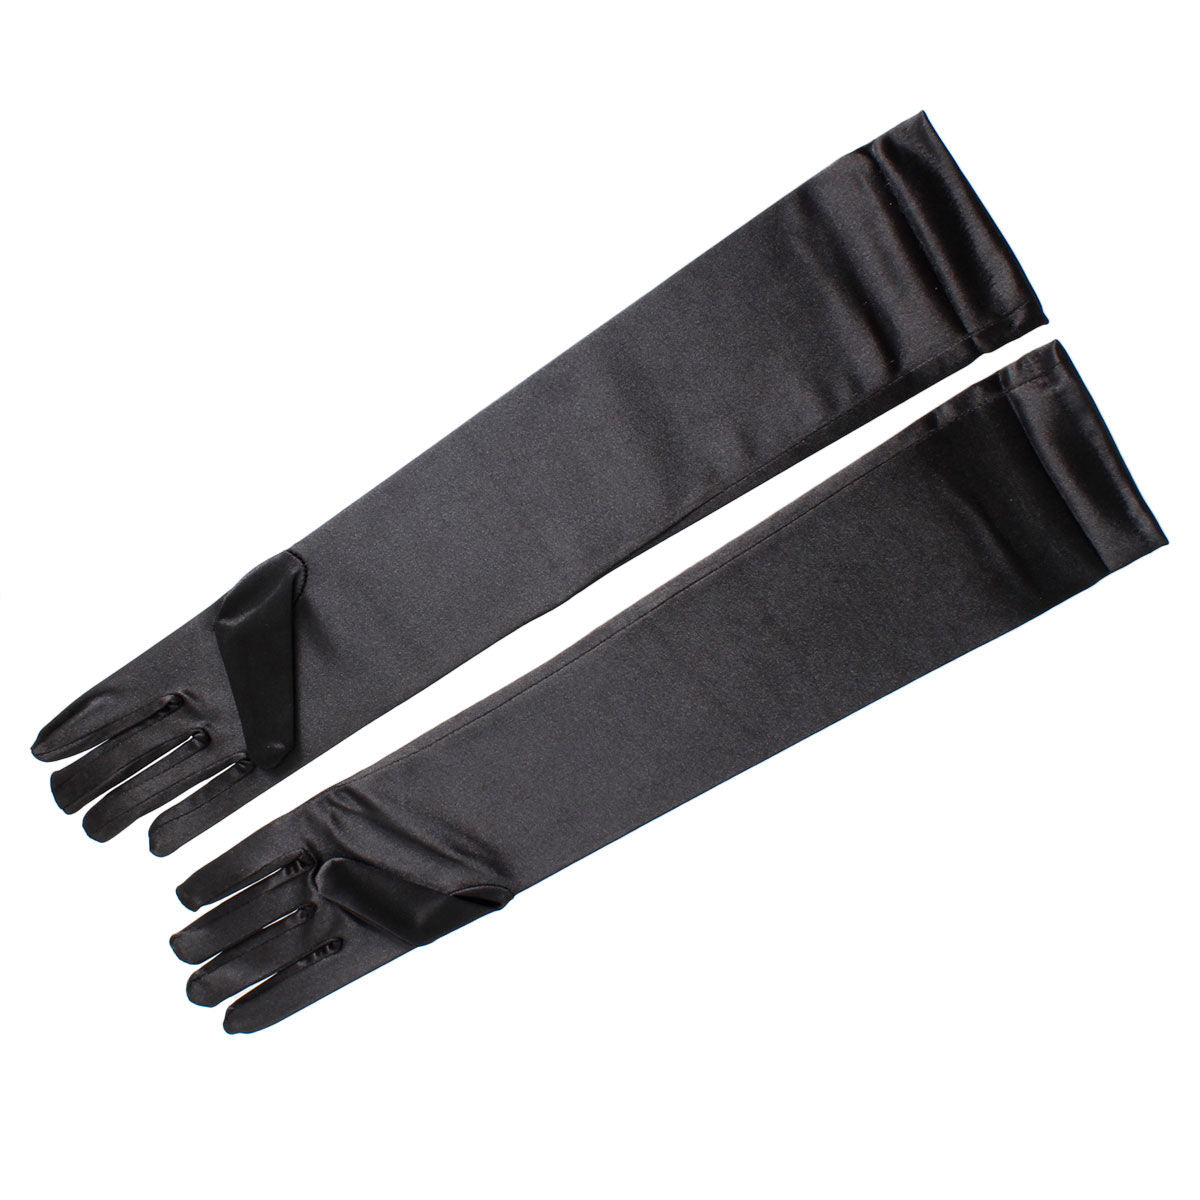 Long Black Satin Gloves